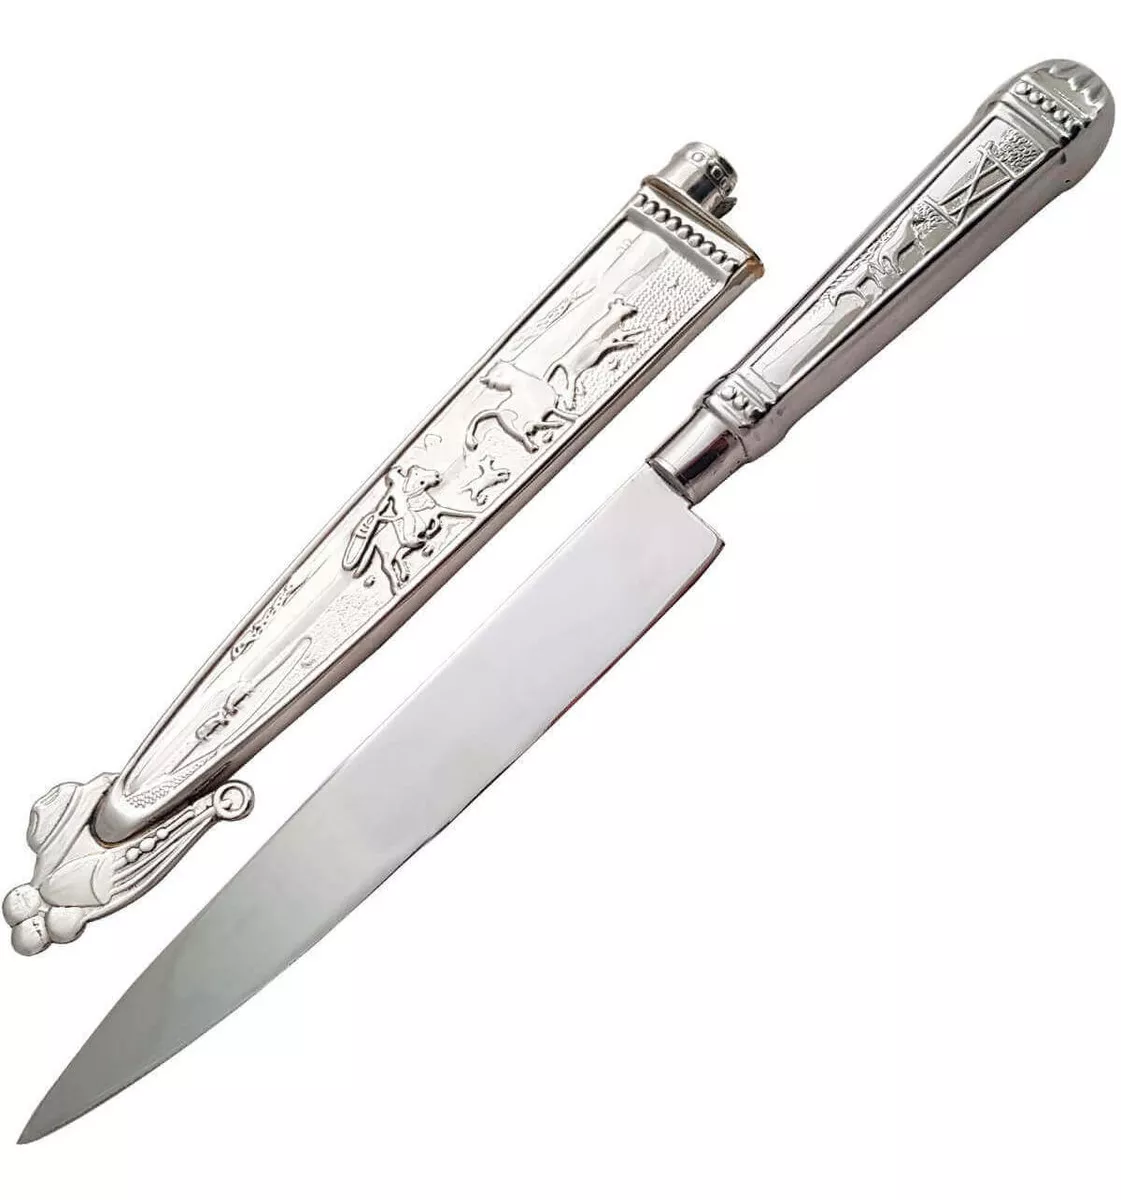 Segunda imagem para pesquisa de faca gaucha prata